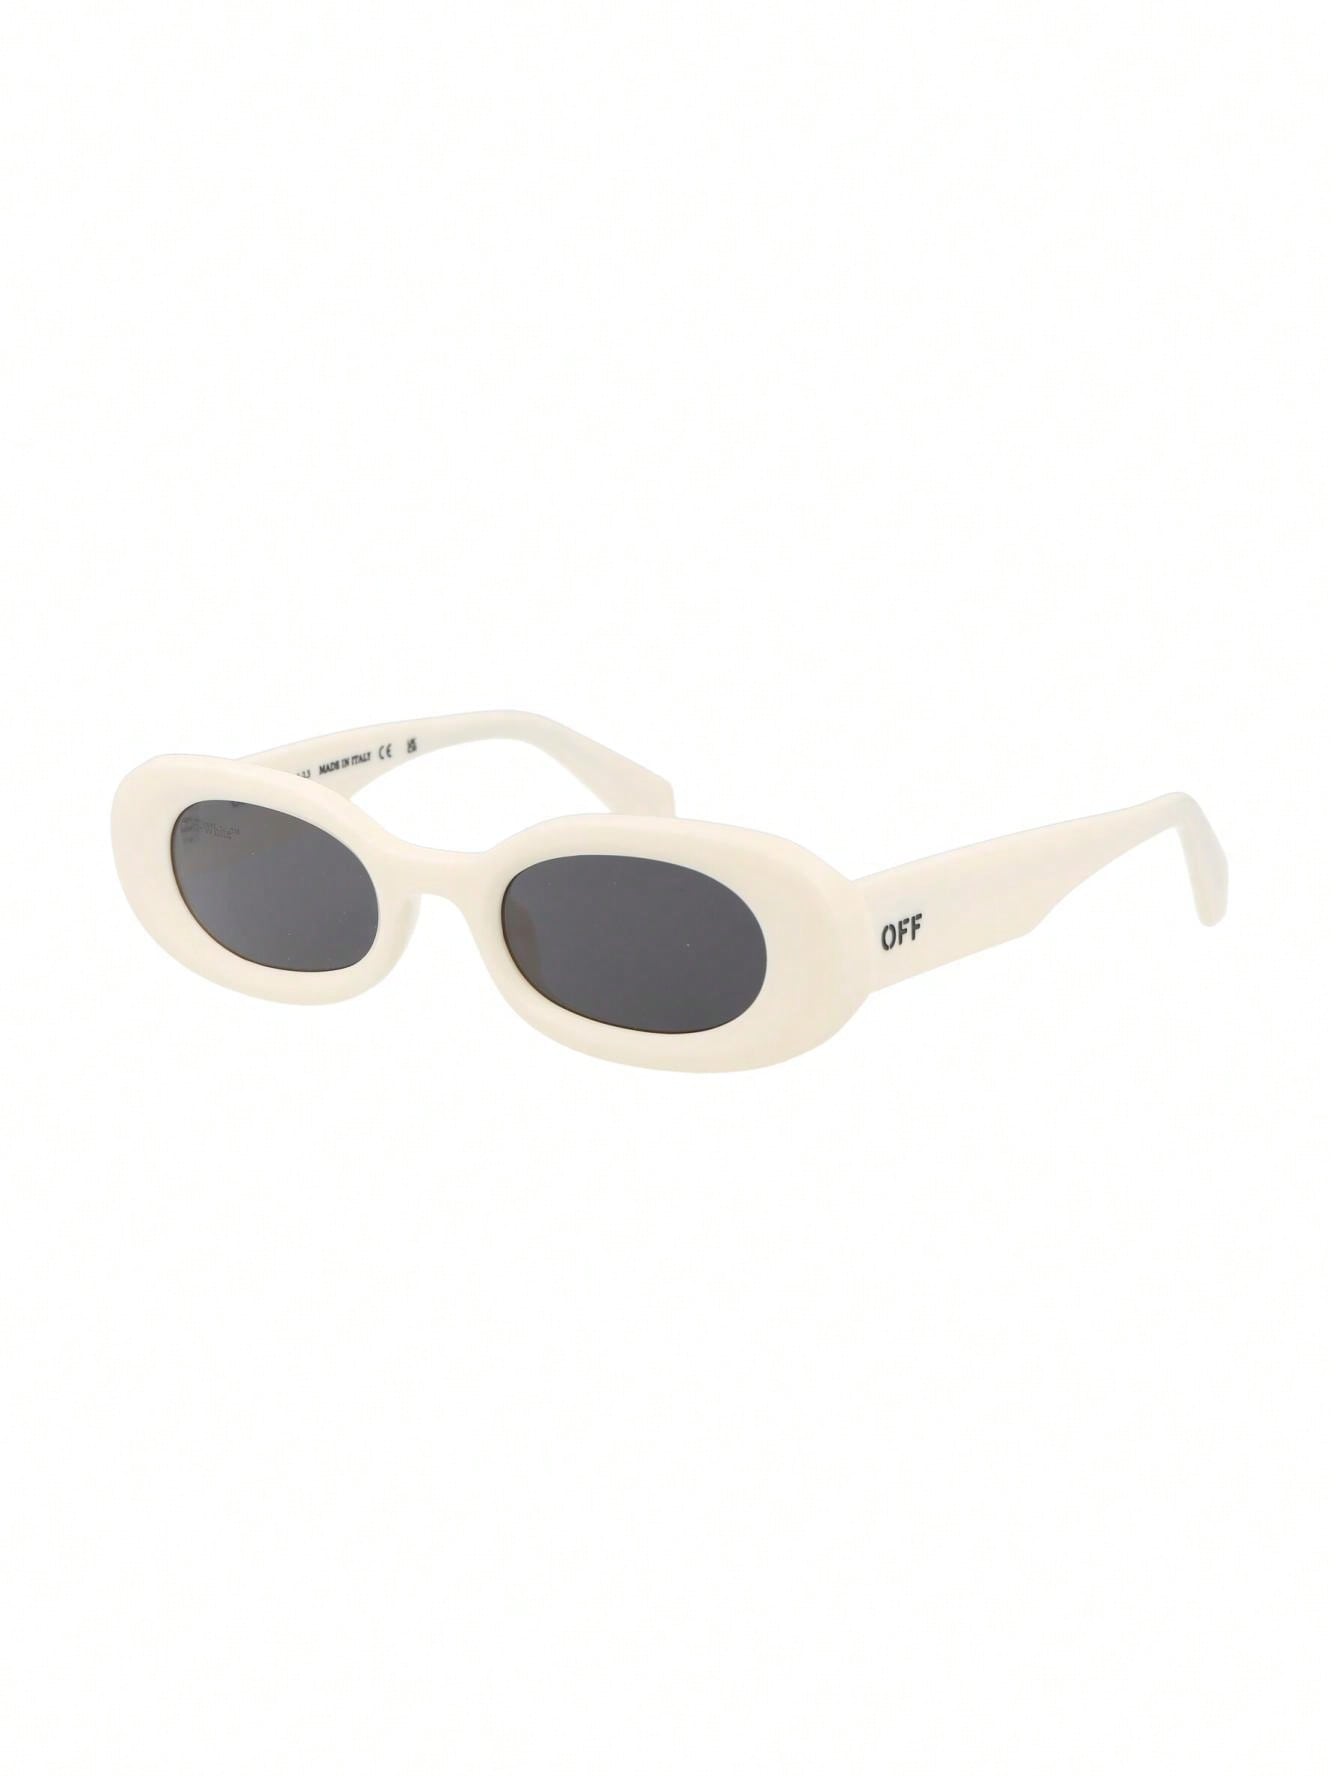 мужские солнцезащитные очки off white черные oeri094f23pla0011007 черный Мужские солнцезащитные очки Off-White БЕЛЫЕ OERI087F23PLA0010107, белый